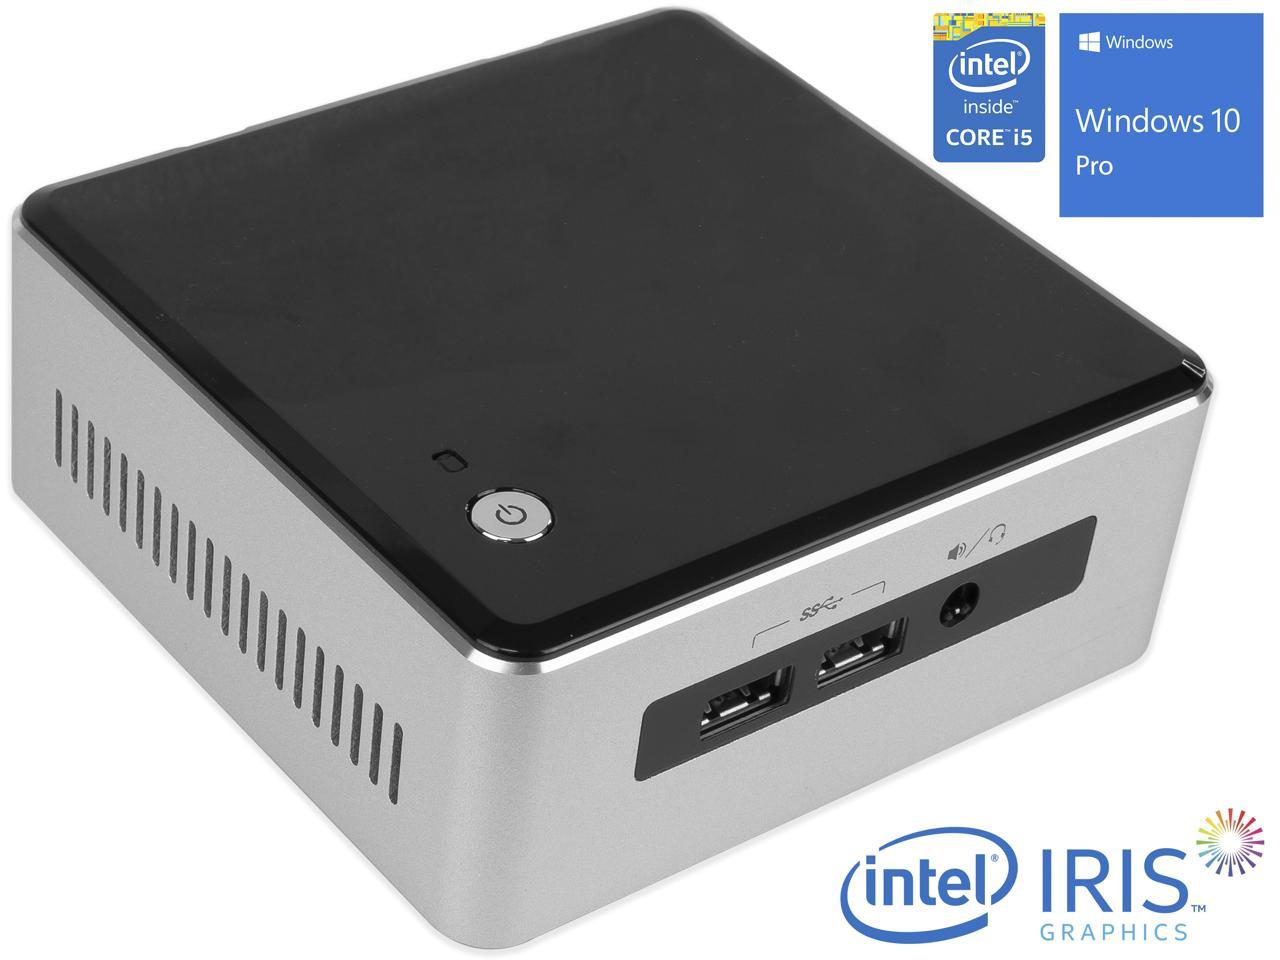 Intel NUC5i5RYH Mini PC, Intel Core i5-5250U Upto 2.7GHz, 4GB RAM, 256GB SSD, Micro HDMI, Mini DisplayPort, Wi-Fi, Bluetooth, Windows 10 Pro